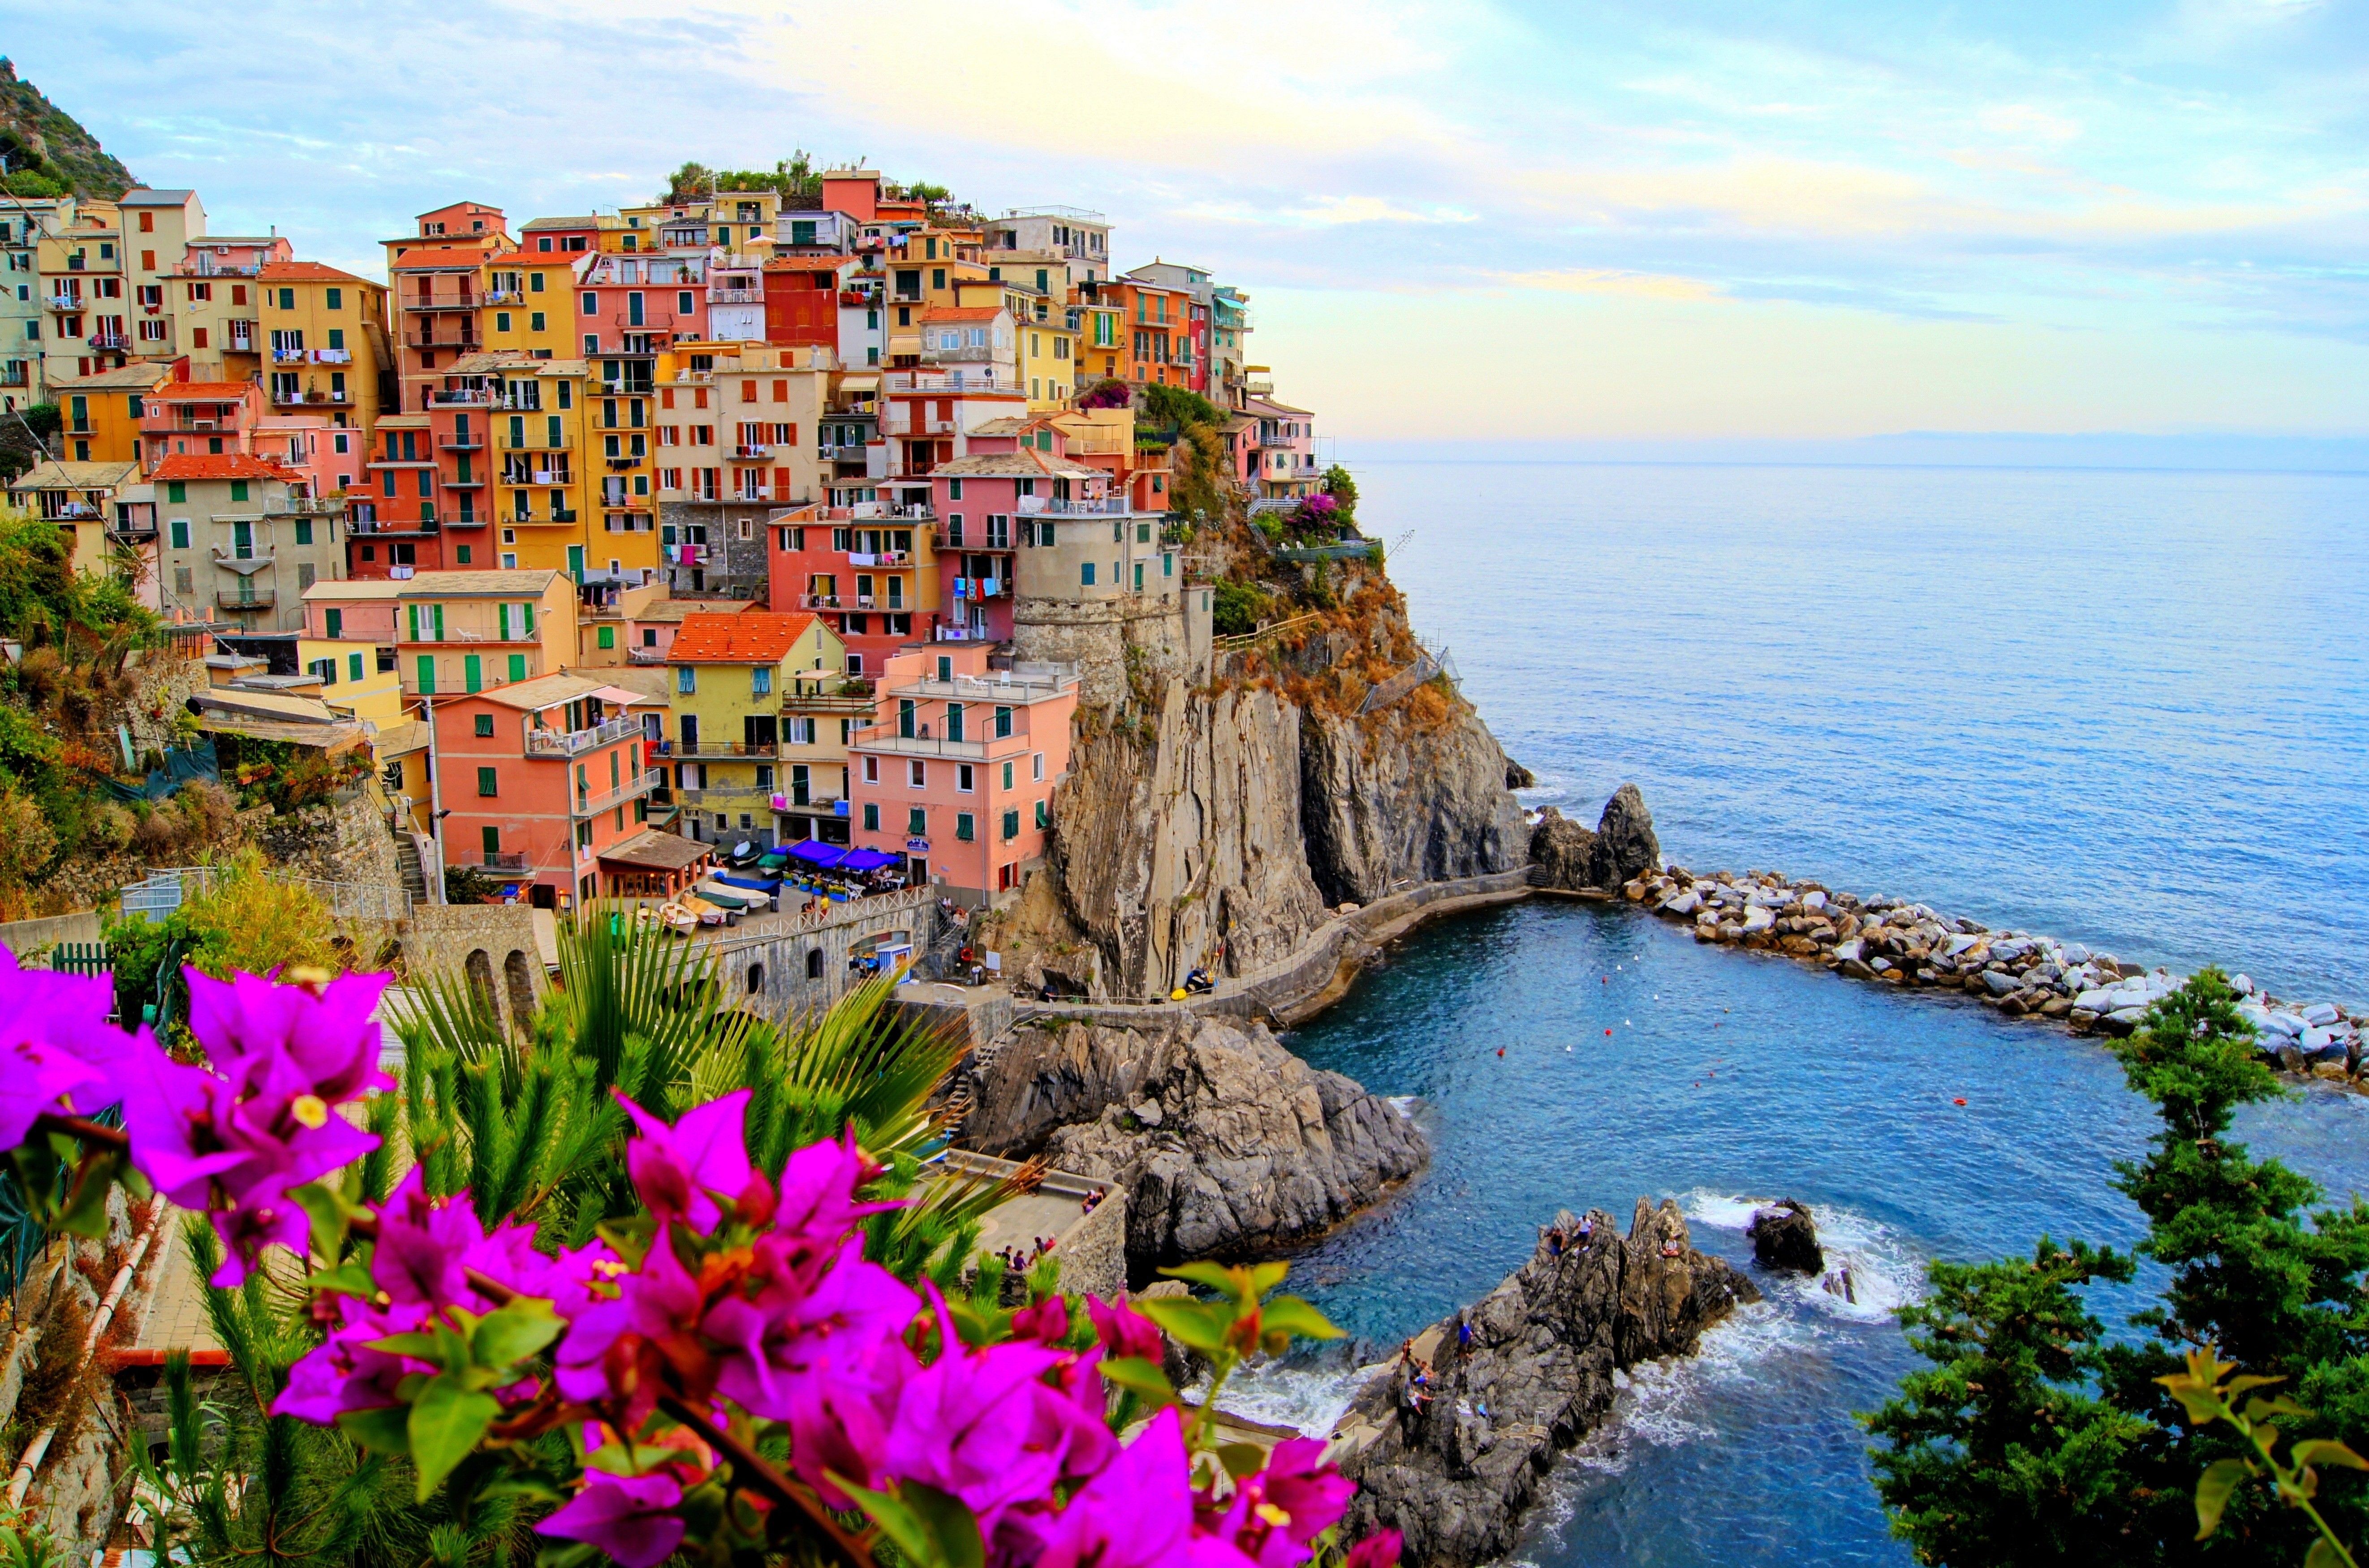 Hình nền Ý miễn phí: Tìm kiếm một hình nền Ý tuyệt đẹp để trang trí máy tính của bạn mà không tốn một xu nào? Chúng tôi có thể giúp bạn với những bức ảnh đầy màu sắc và hình ảnh đẹp mắt từ Ý, và điều đặc biệt là nó hoàn toàn miễn phí.